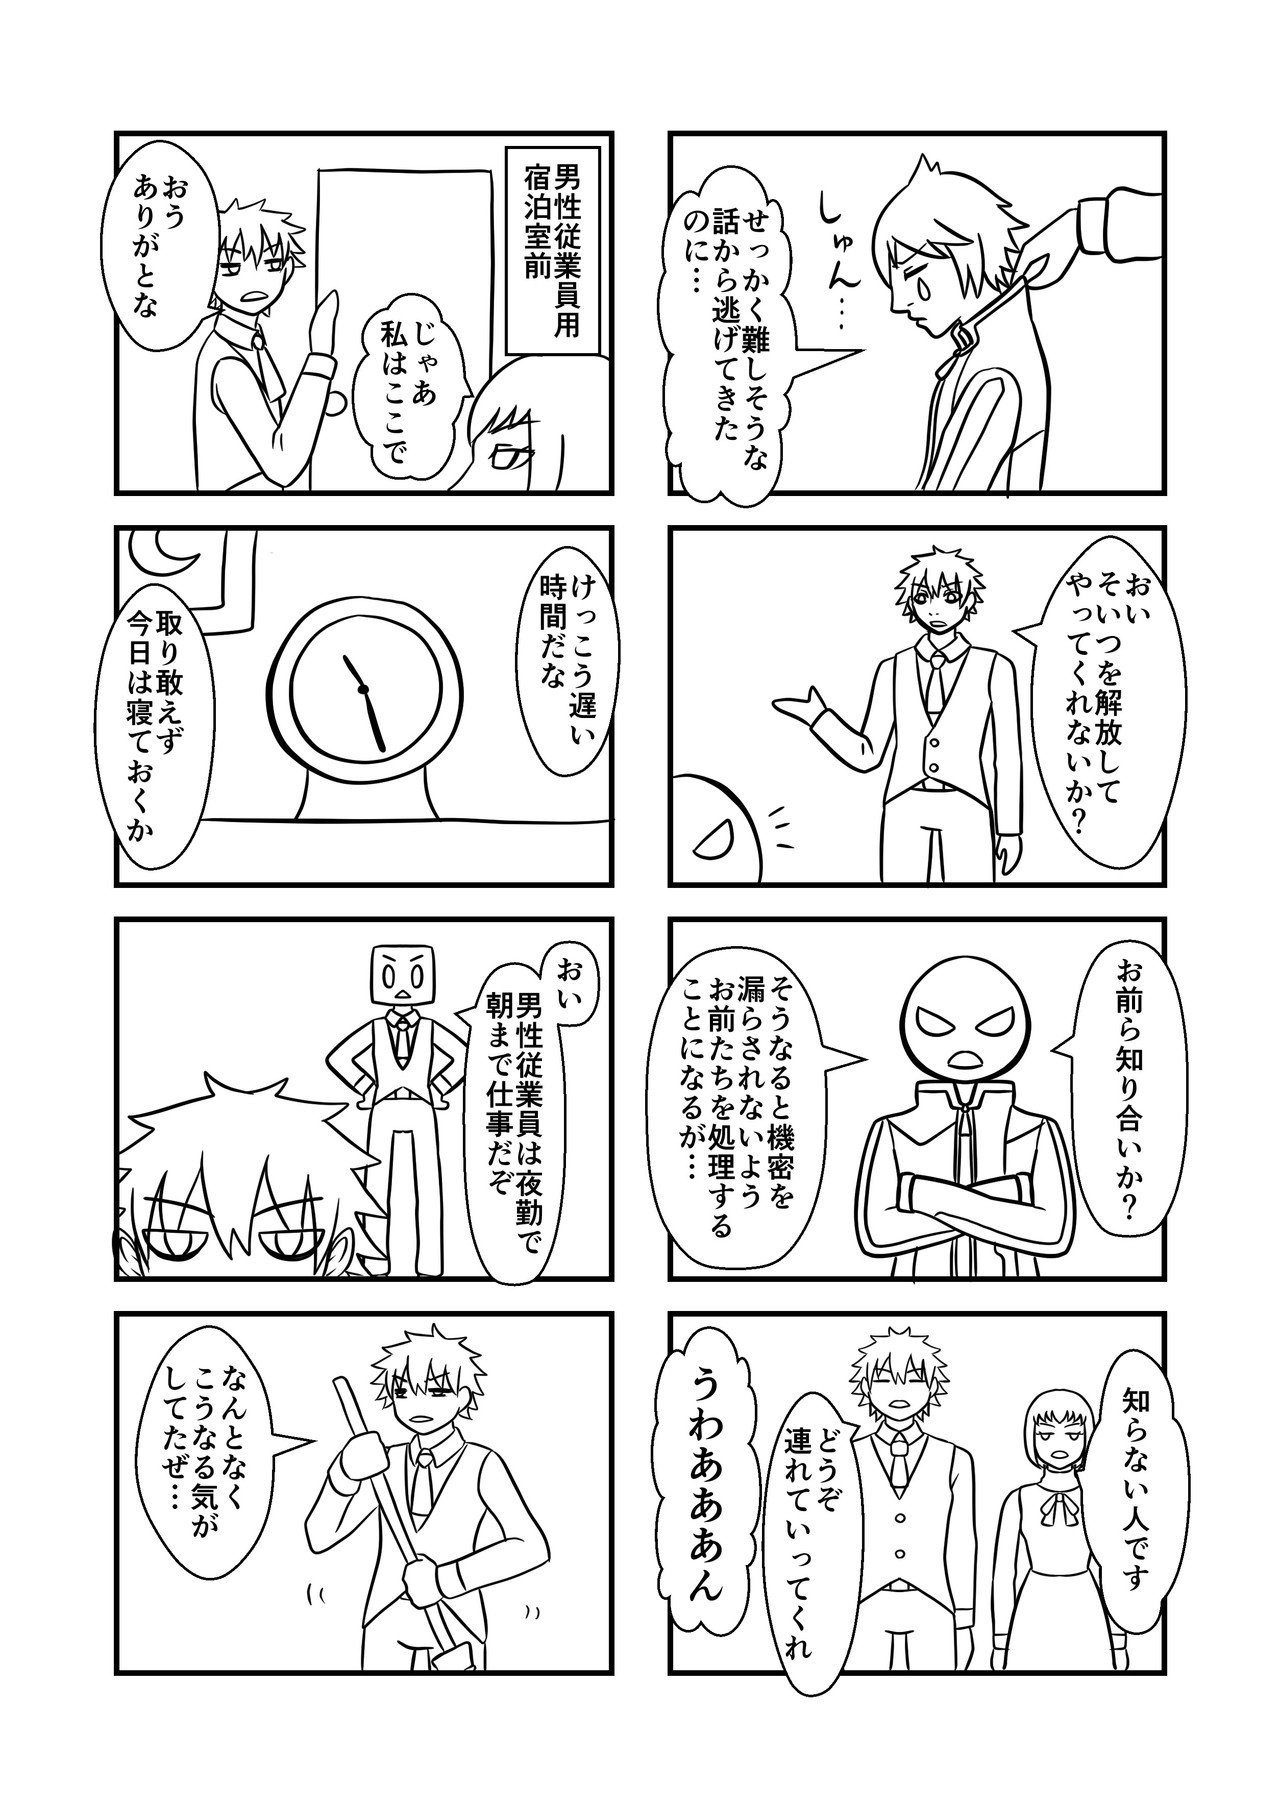 コミック4_出力_017